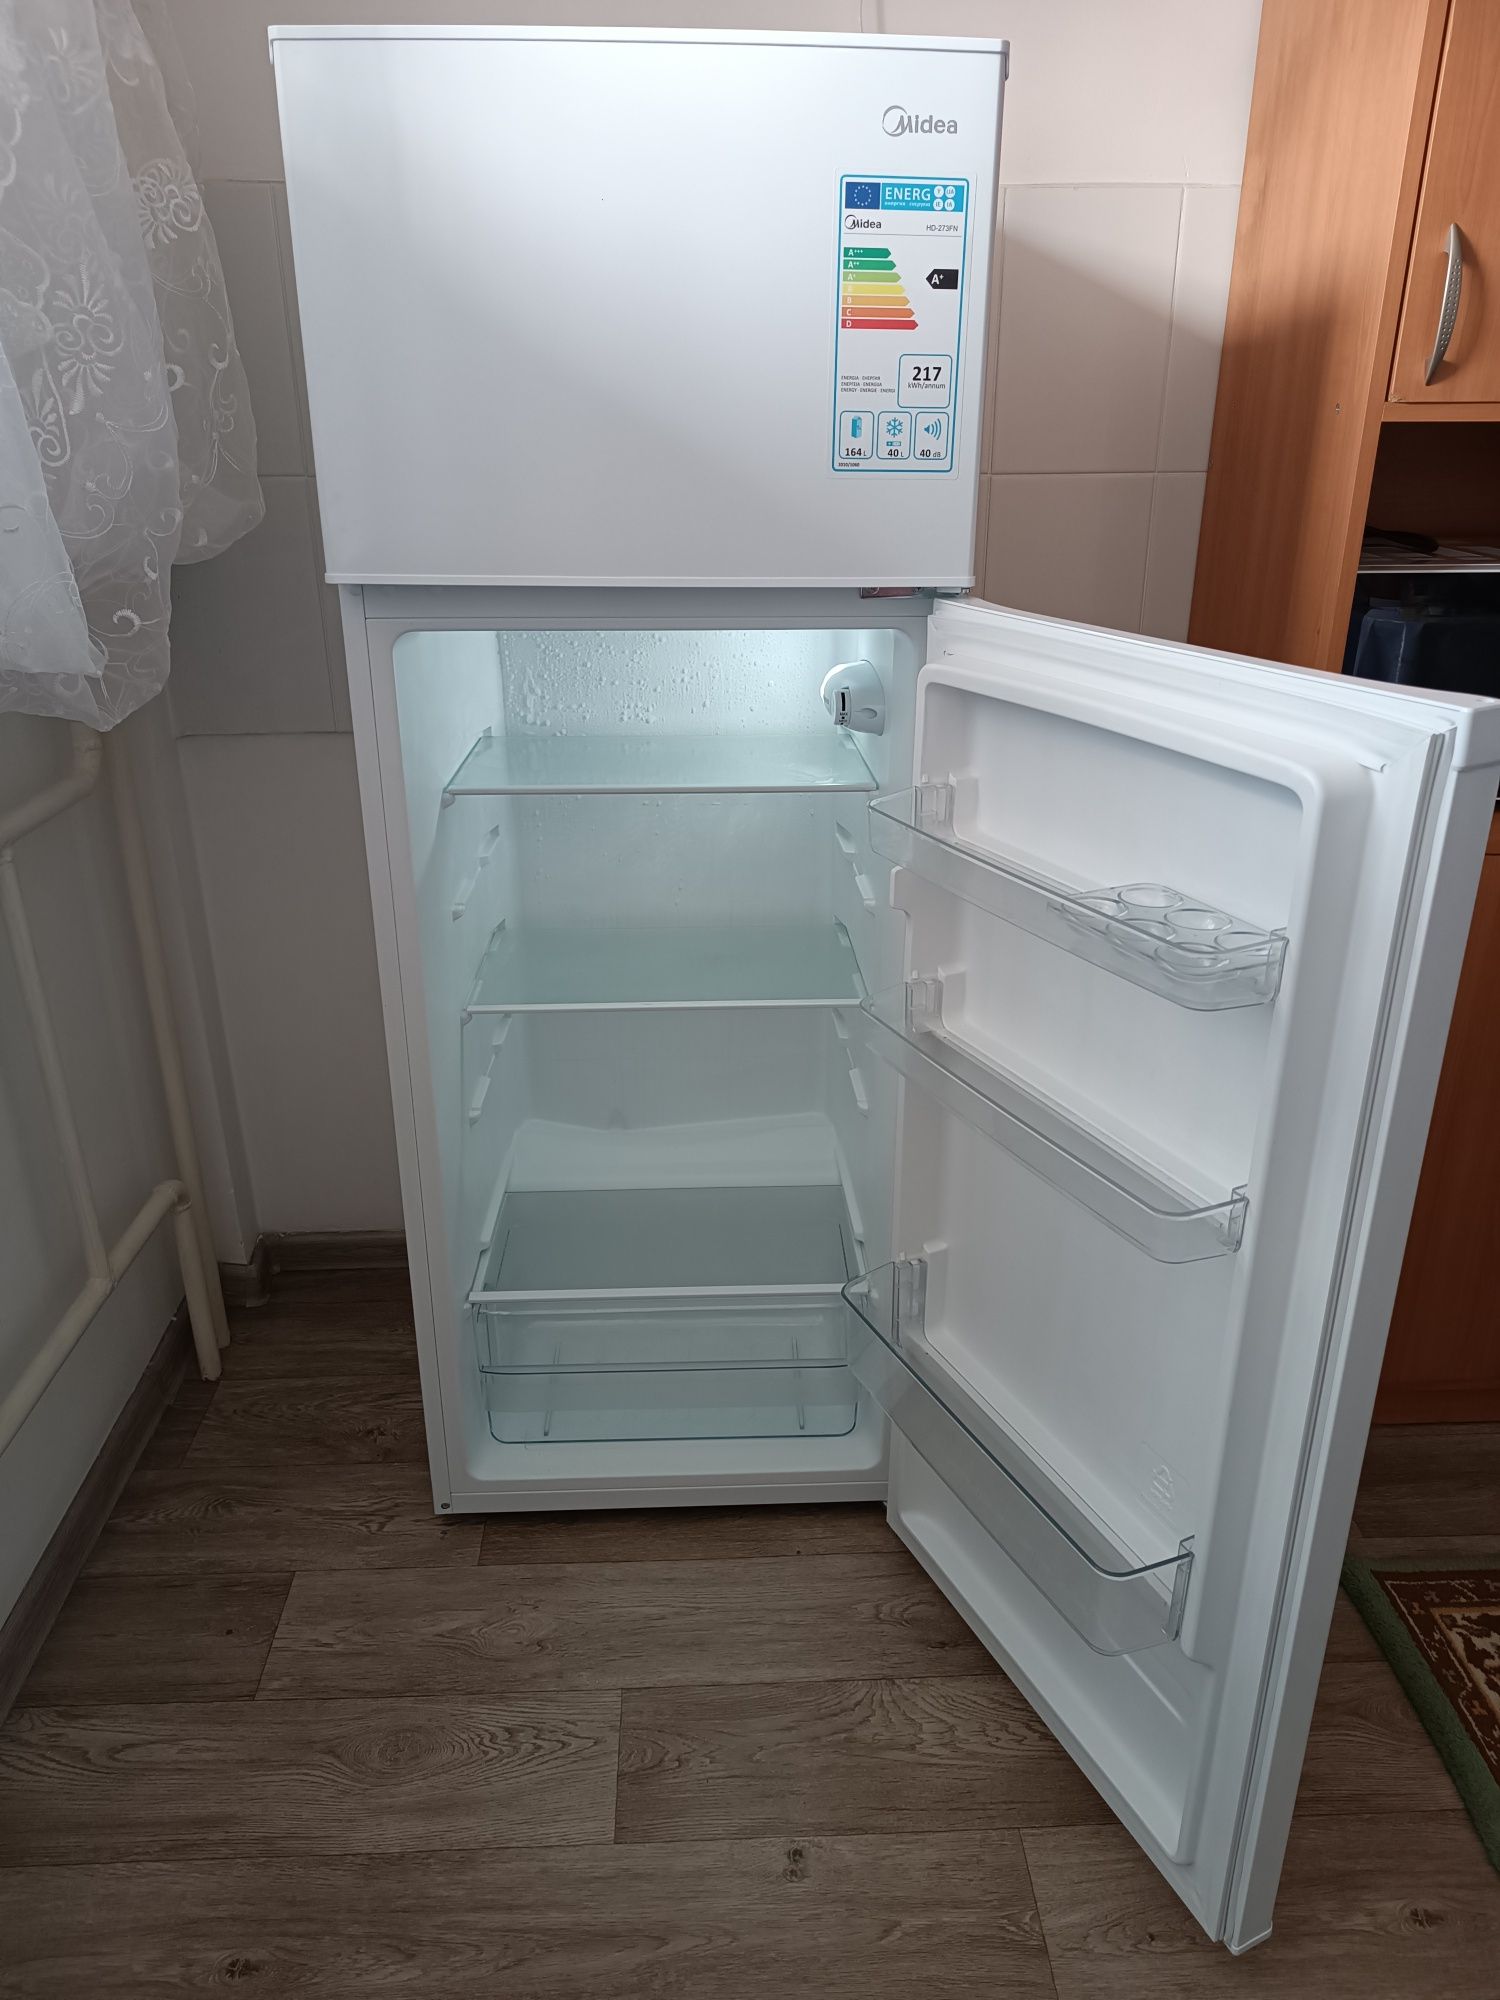 Холодильник тез арада сатылады жагдайы жаксы